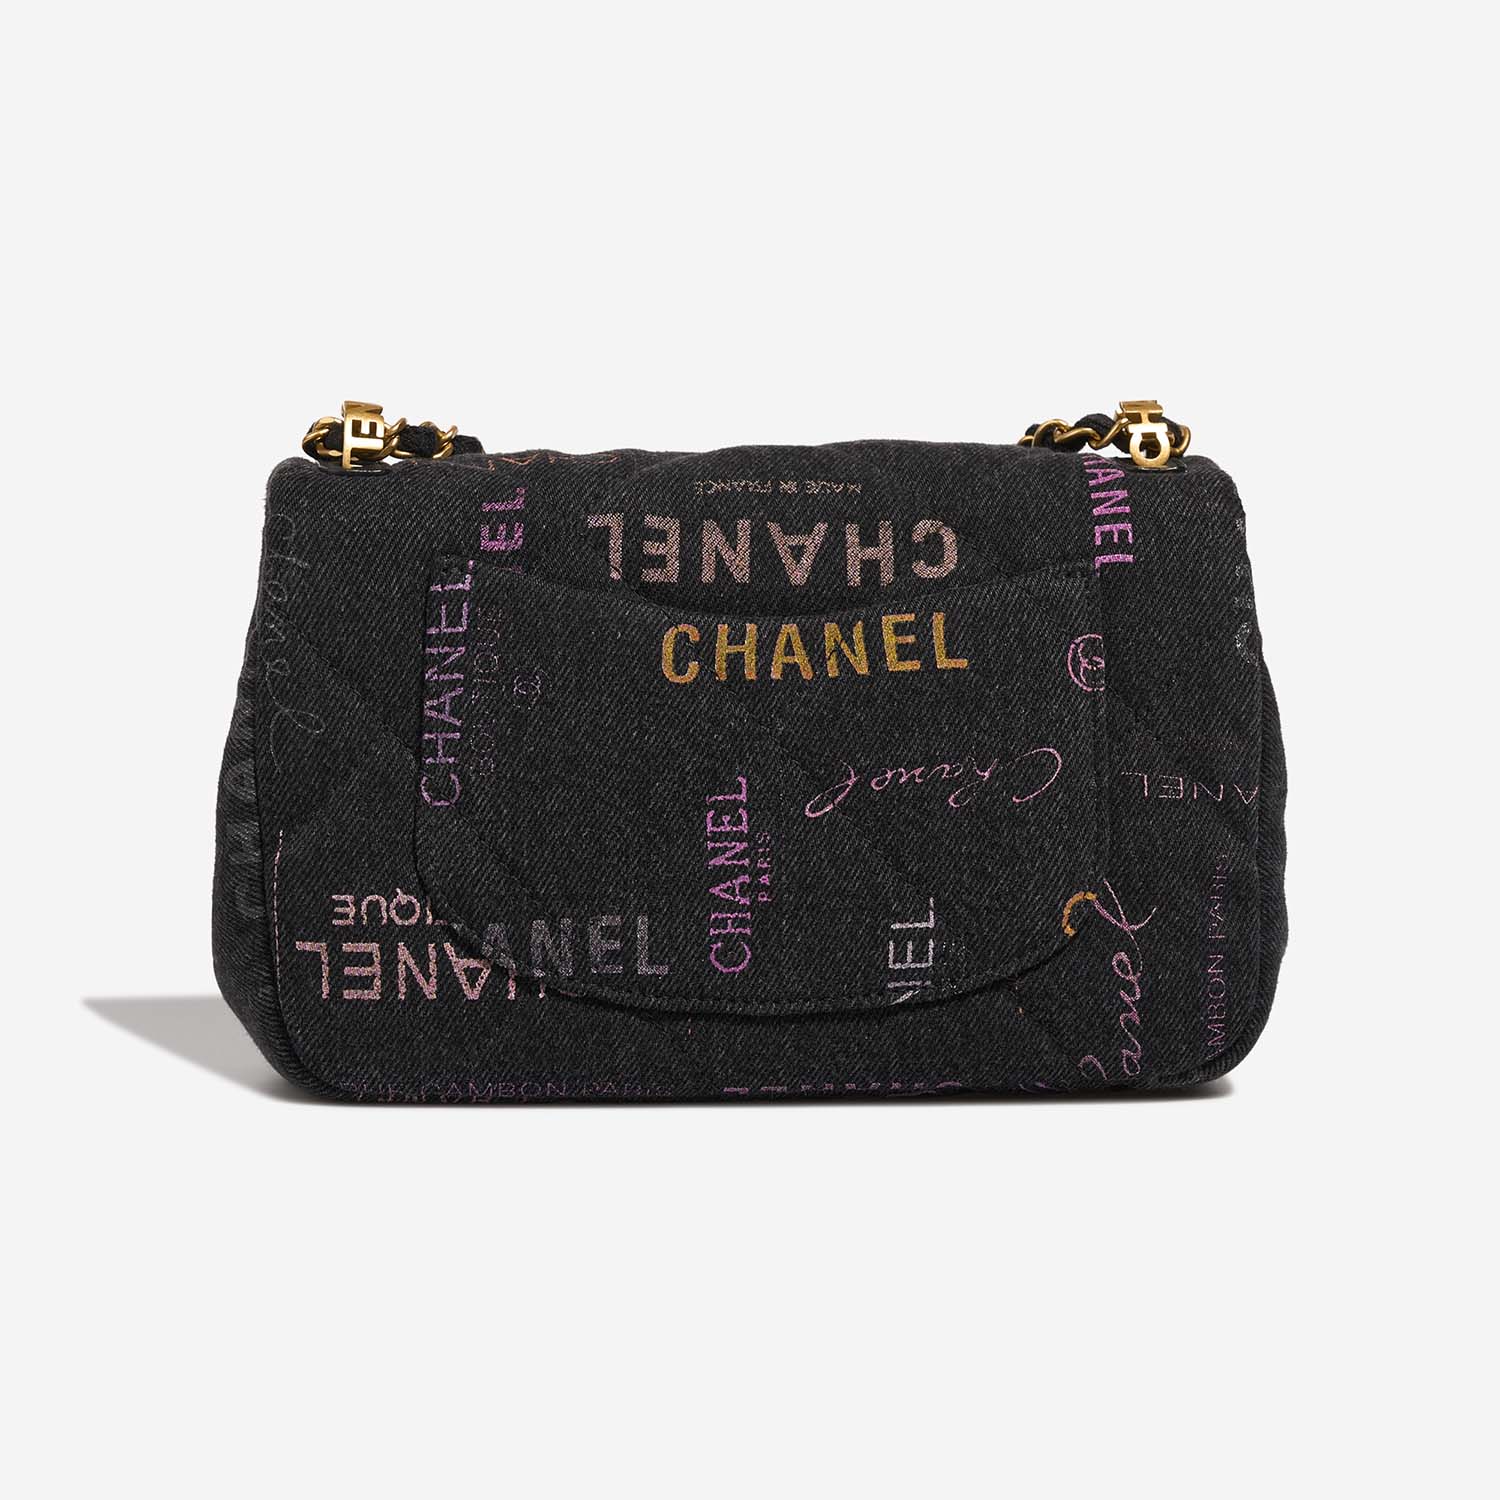 Chanel Timeless Small Multicolor Back | Verkaufen Sie Ihre Designer-Tasche auf Saclab.com